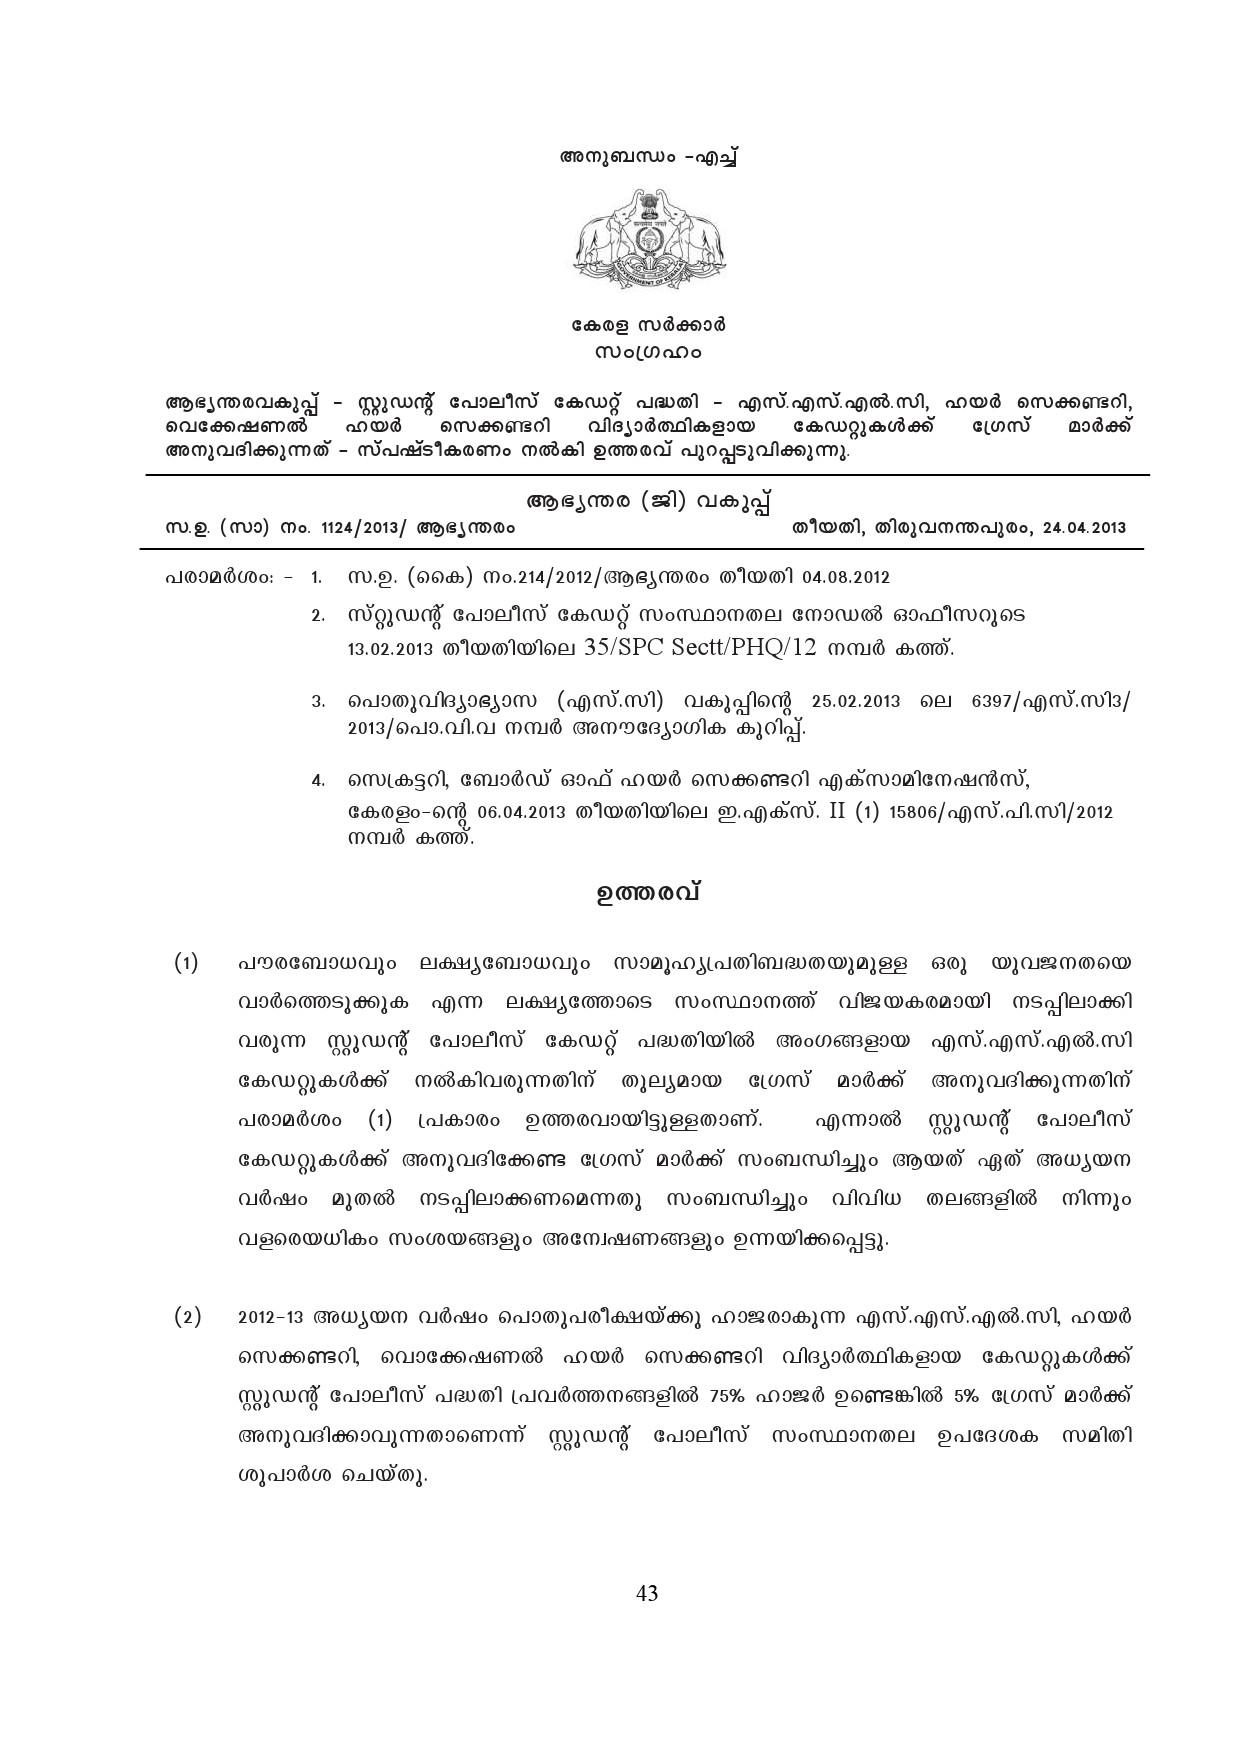 Kerala SSLC Exam Result 2019 - Notification Image 43